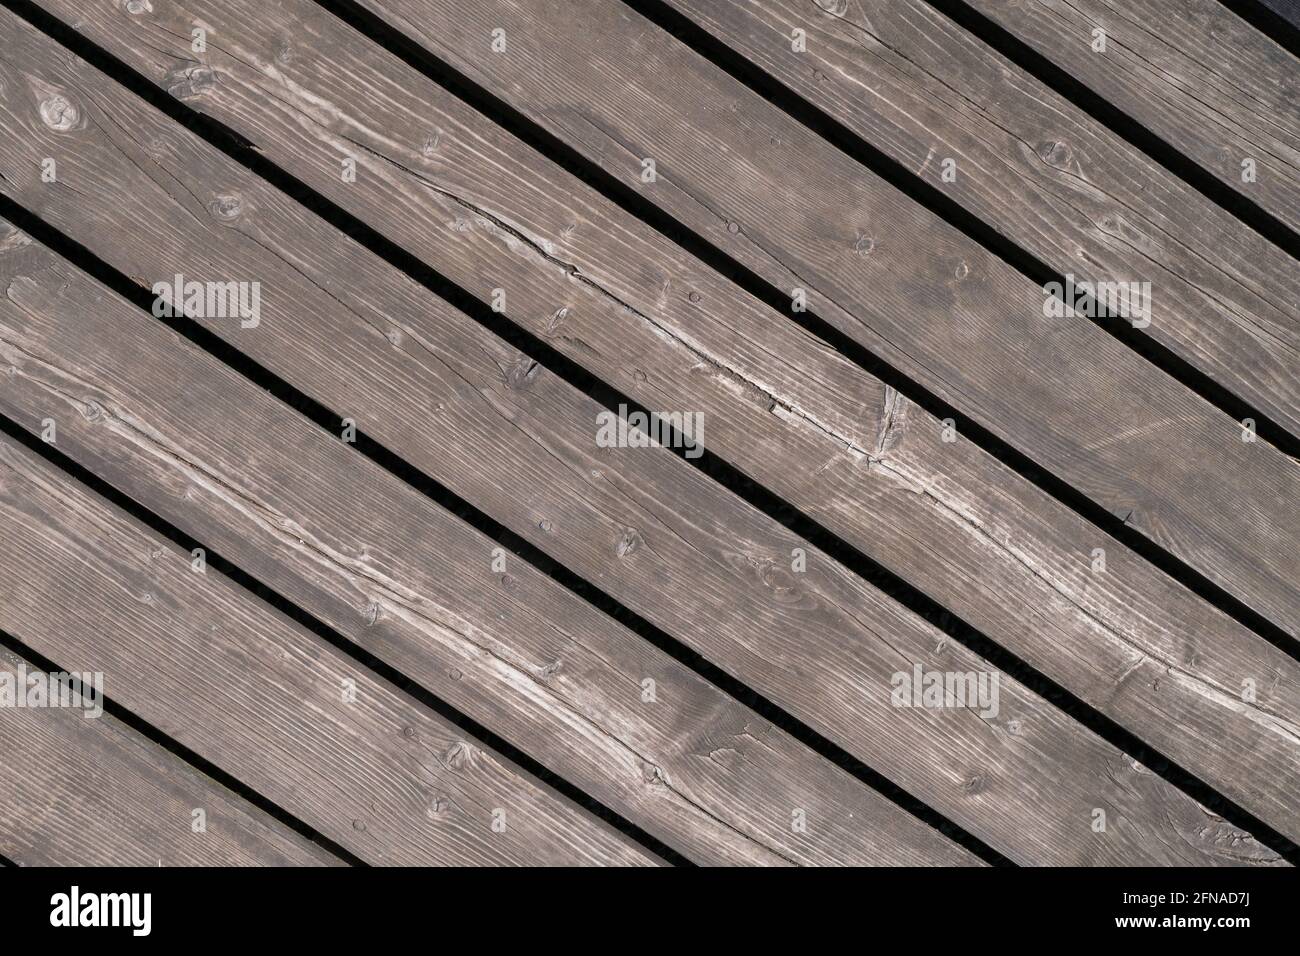 Gewaschenes altes Holz Hintergrund, abstrakte Holzstruktur, auf dem verlassenen Bauernhof gegründet. Kann für Hintergrund- oder andere visuelle Inhalte verwendet werden. Stockfoto